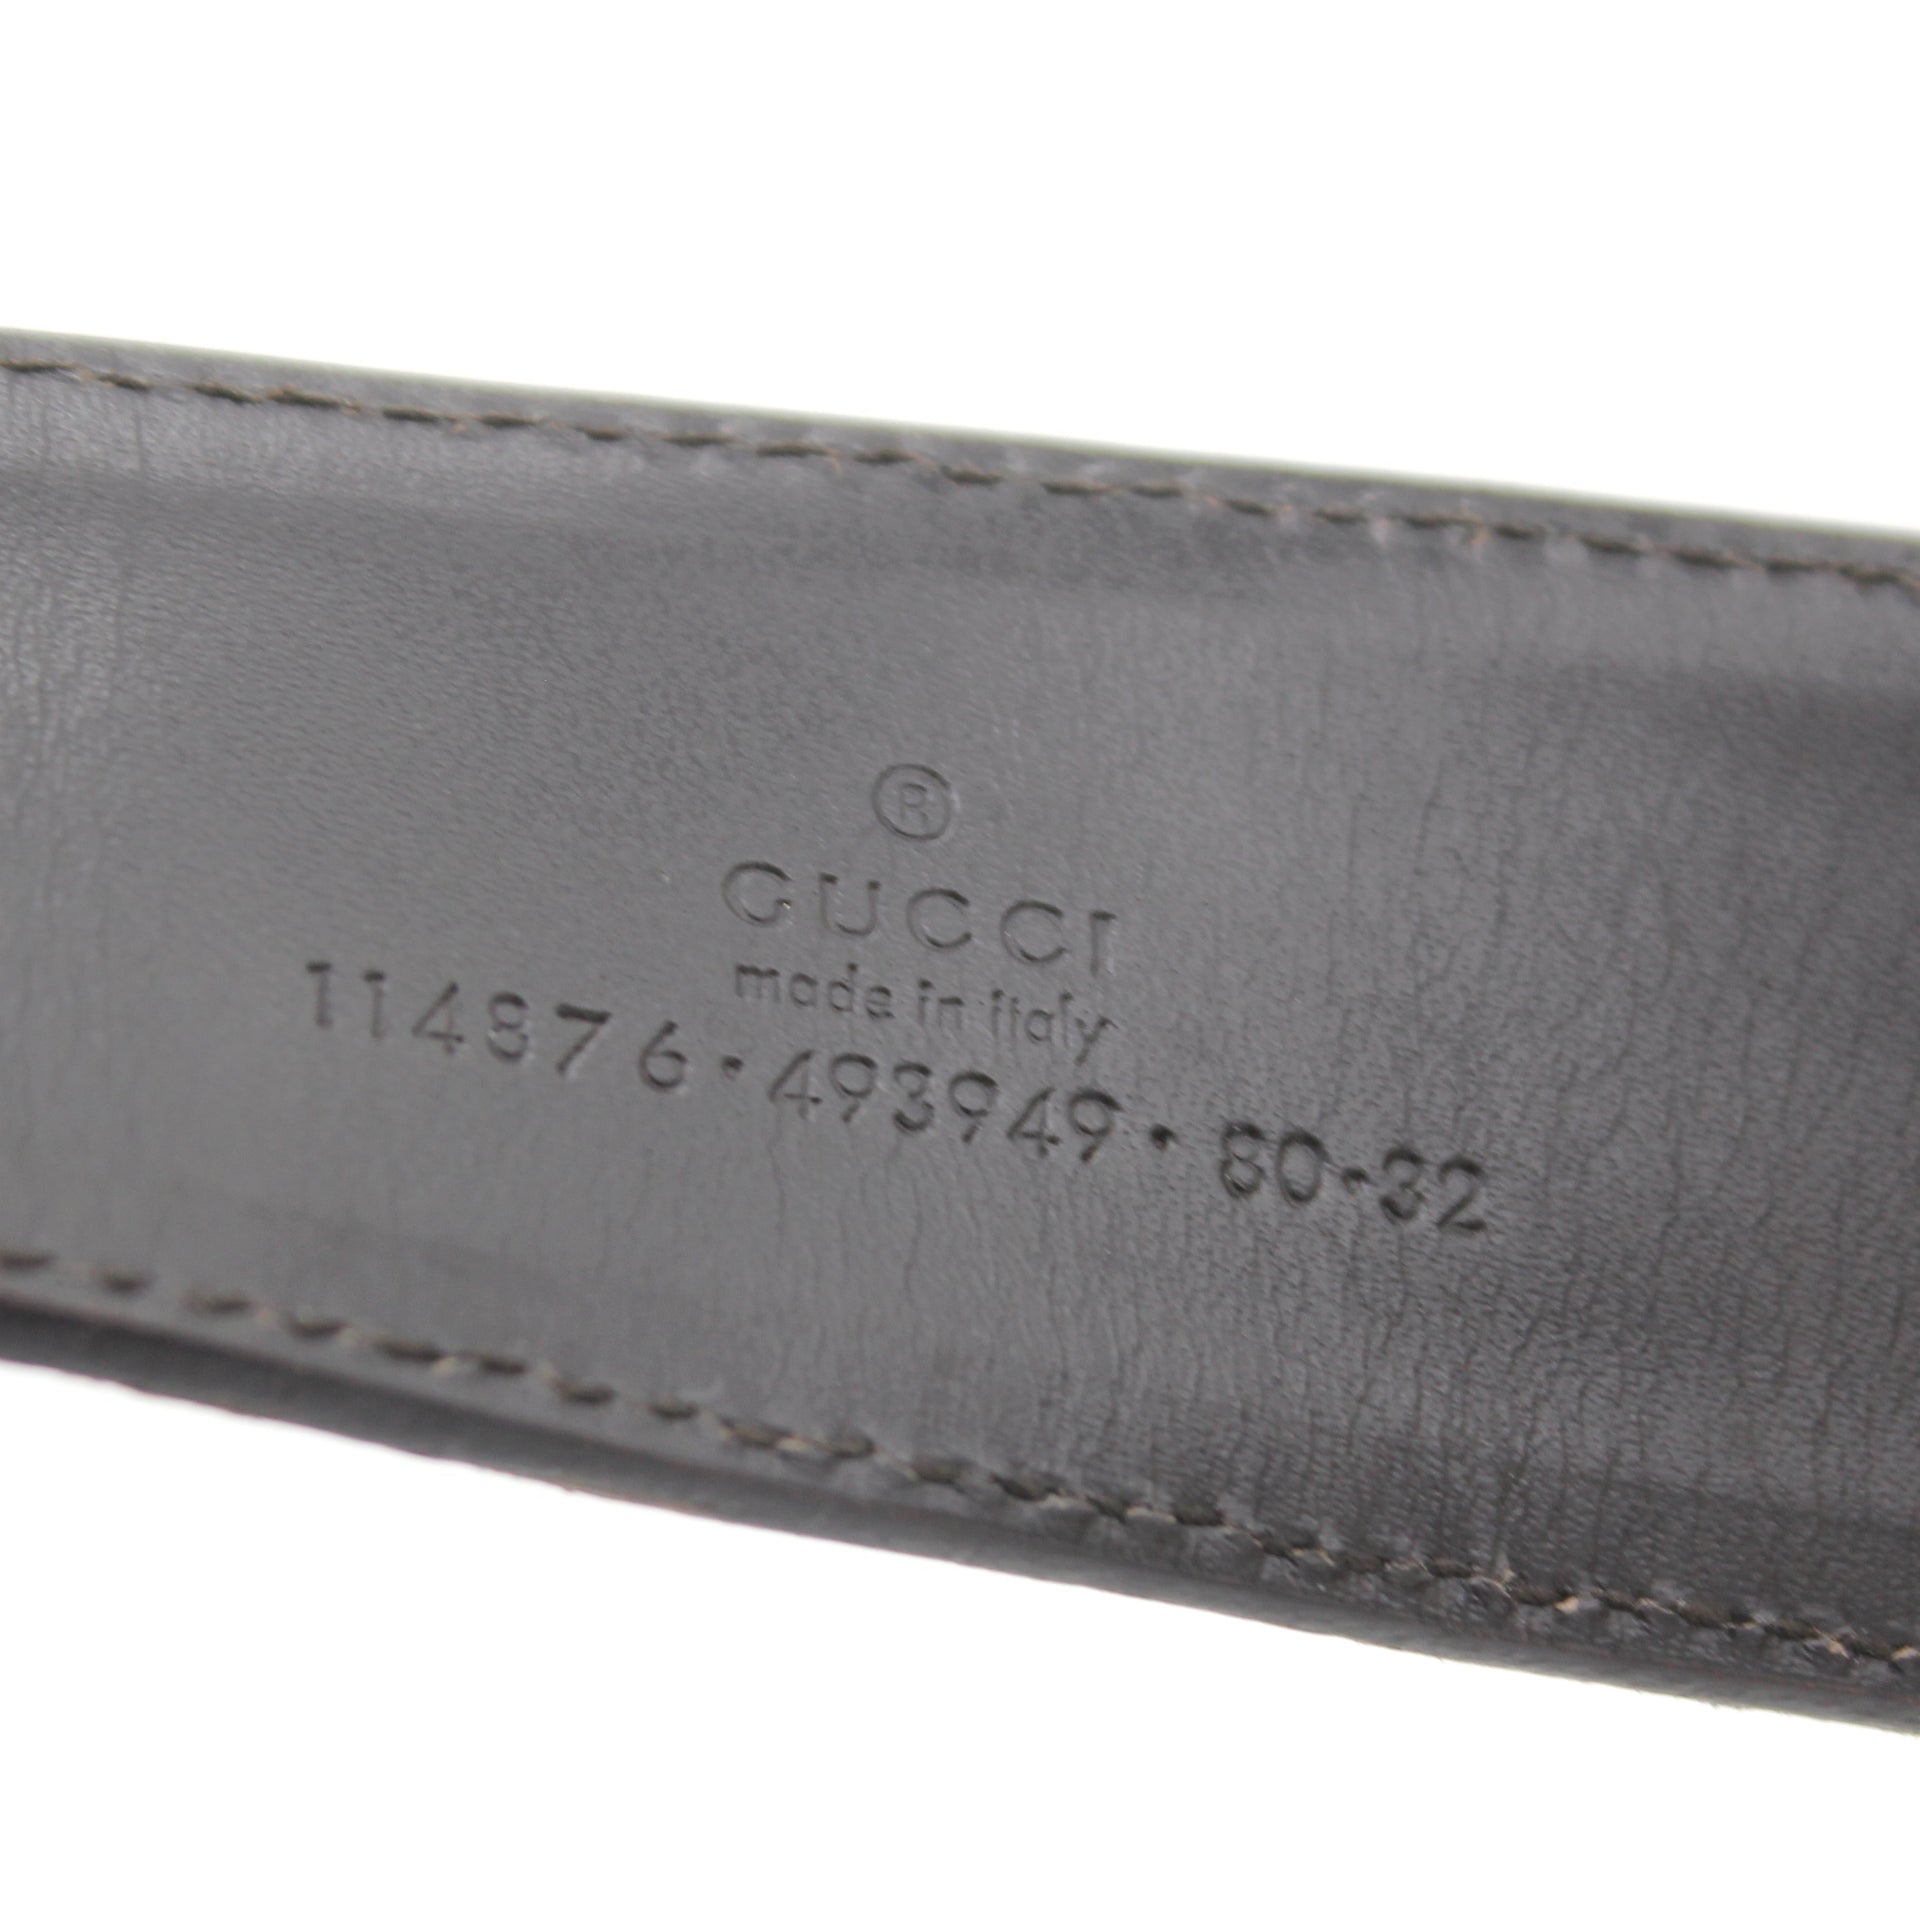 GUCCI Monogram Interlocking G Belt 80 32 Off White 91179